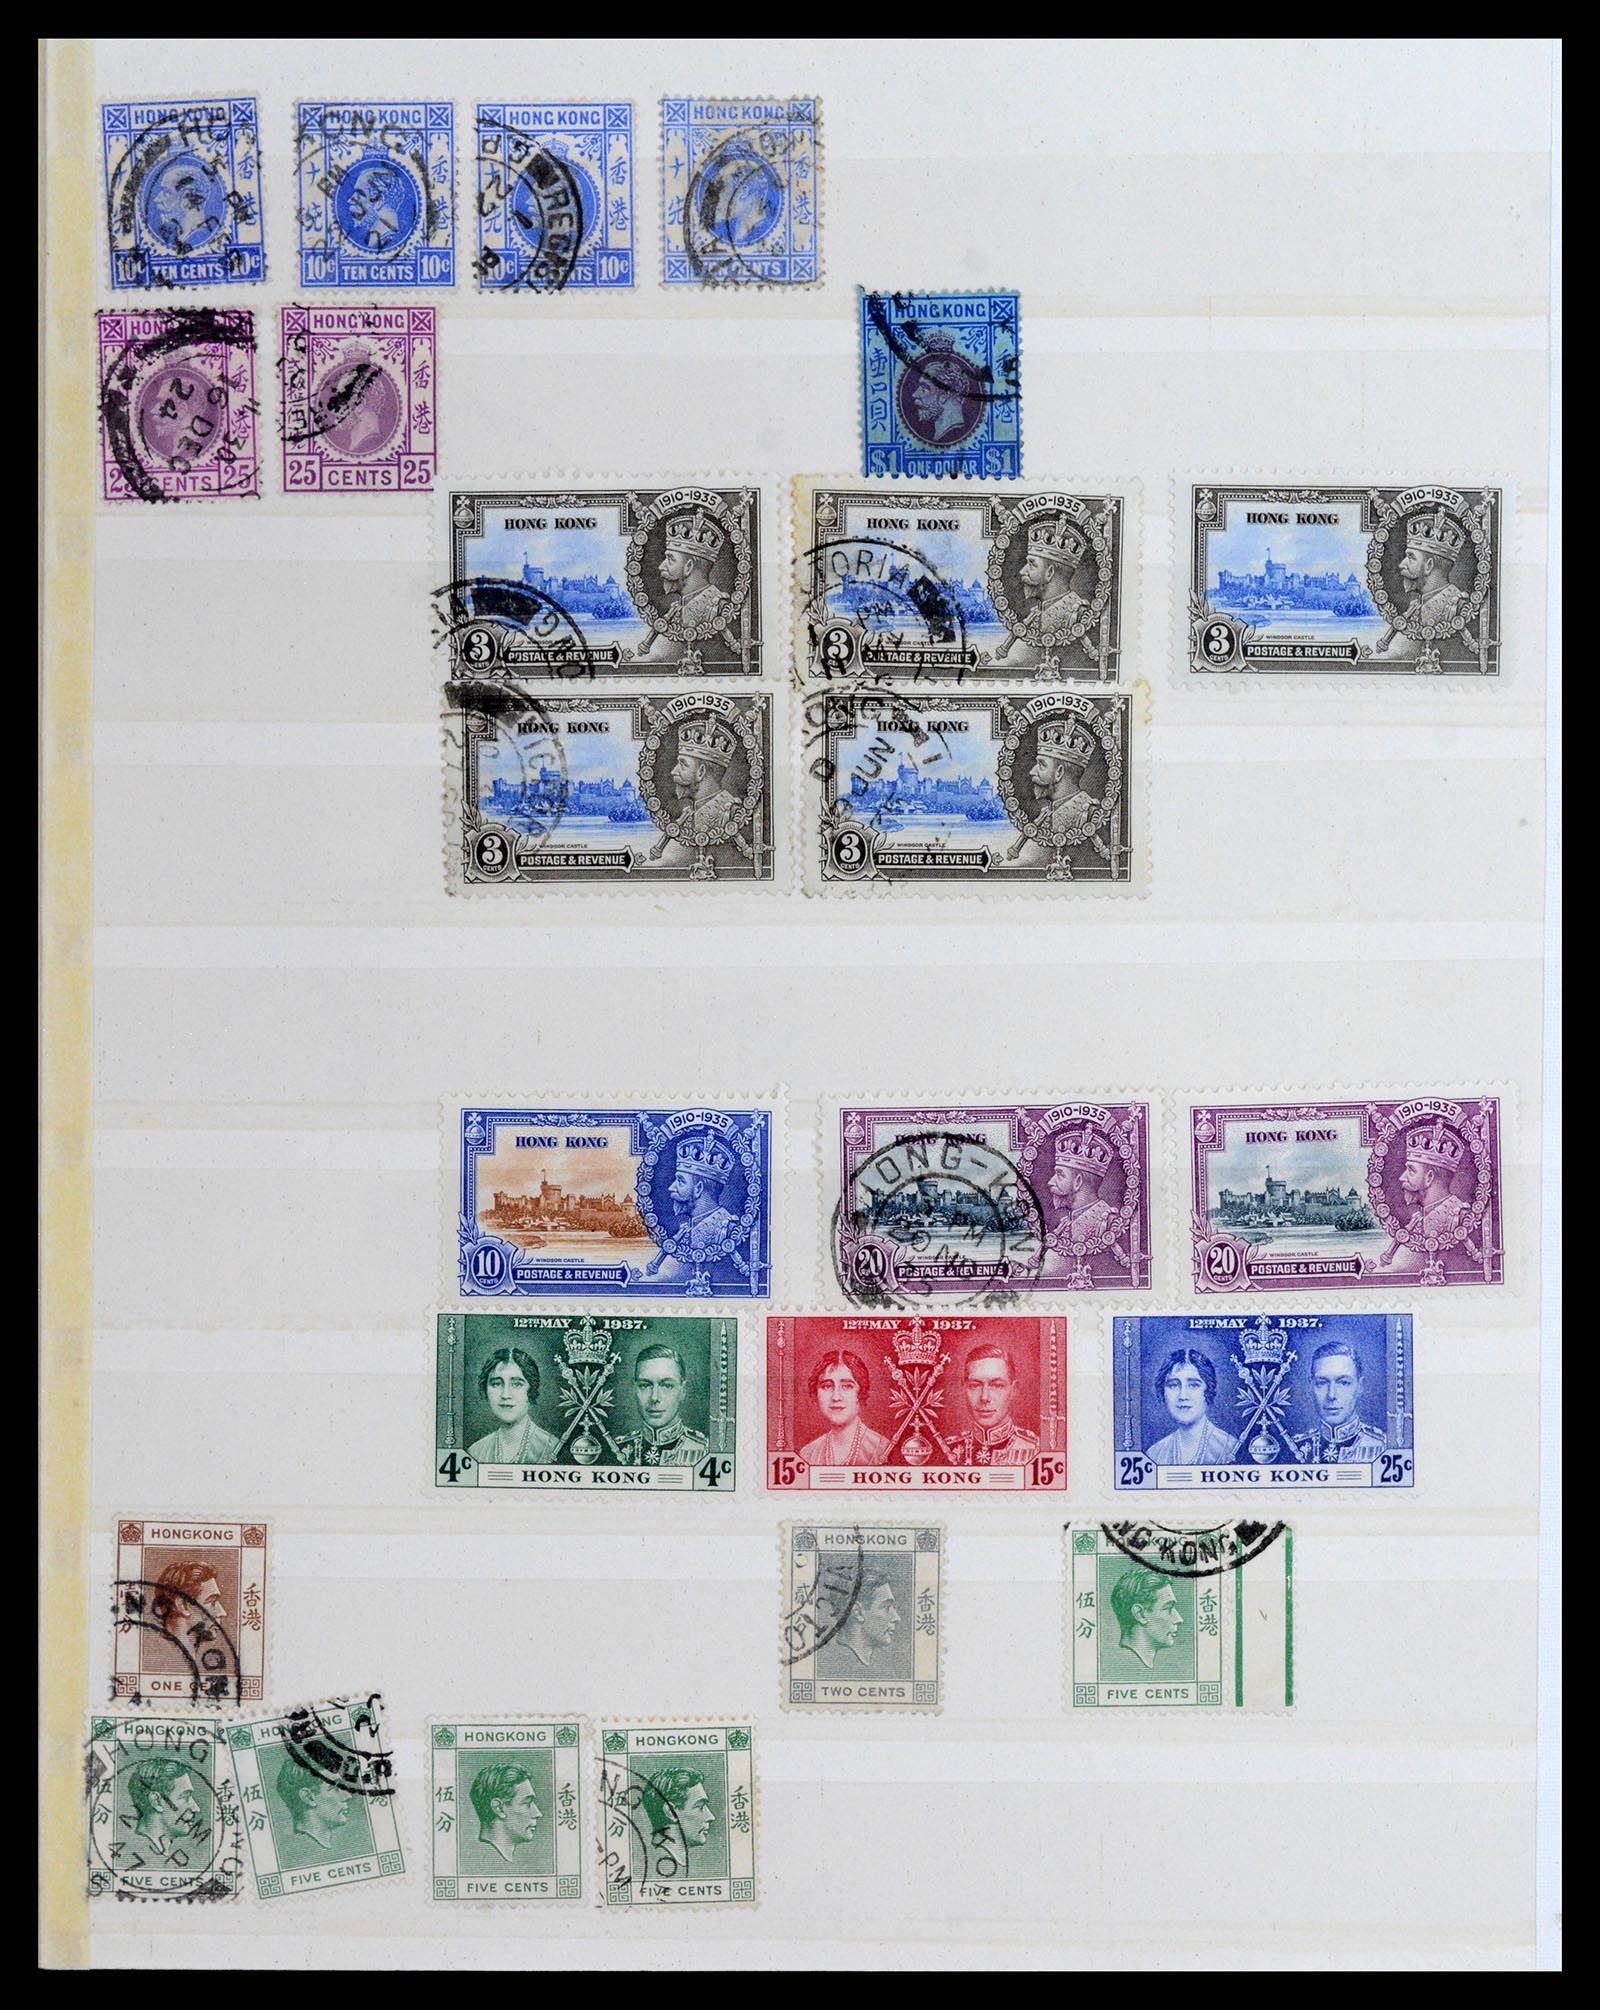 37358 010 - Stamp collection 37358 Hong Kong 1861-1997.